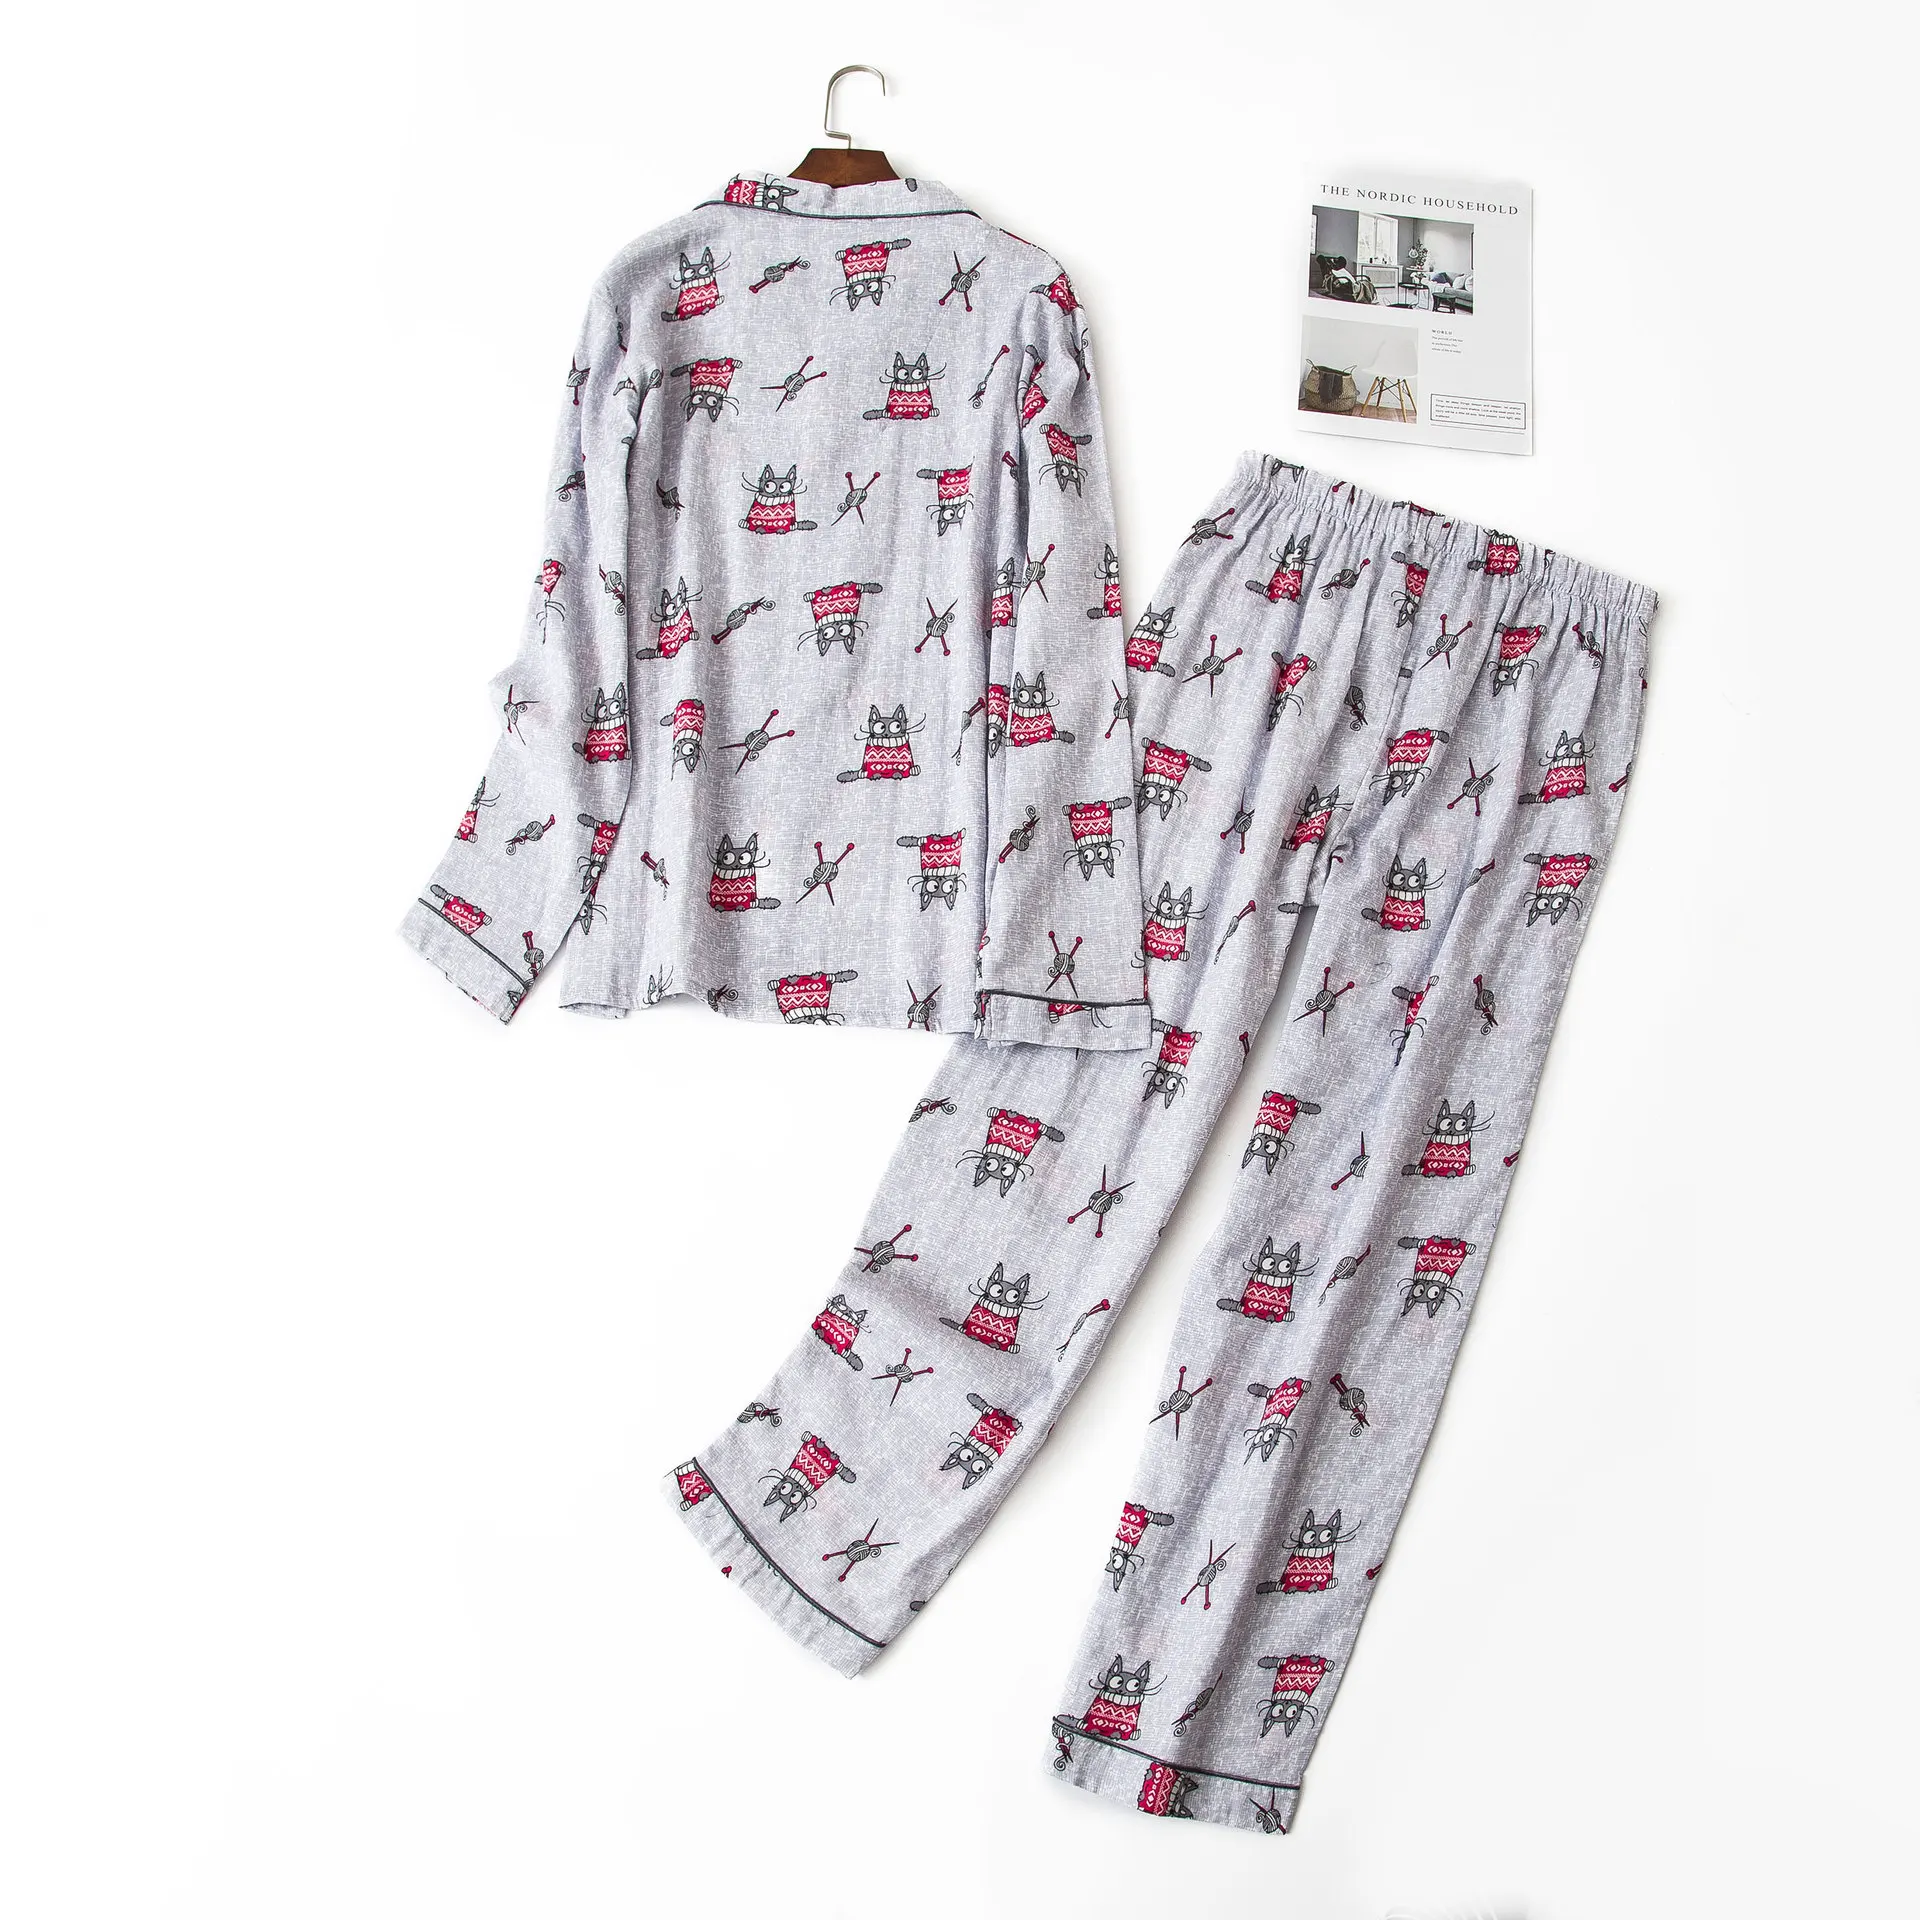 Мужские марлевые хлопковые Пижамные комплекты, повседневные серые пижамы с рисунком Тоторо размера плюс, мужские пижамы, sexi hombres homme